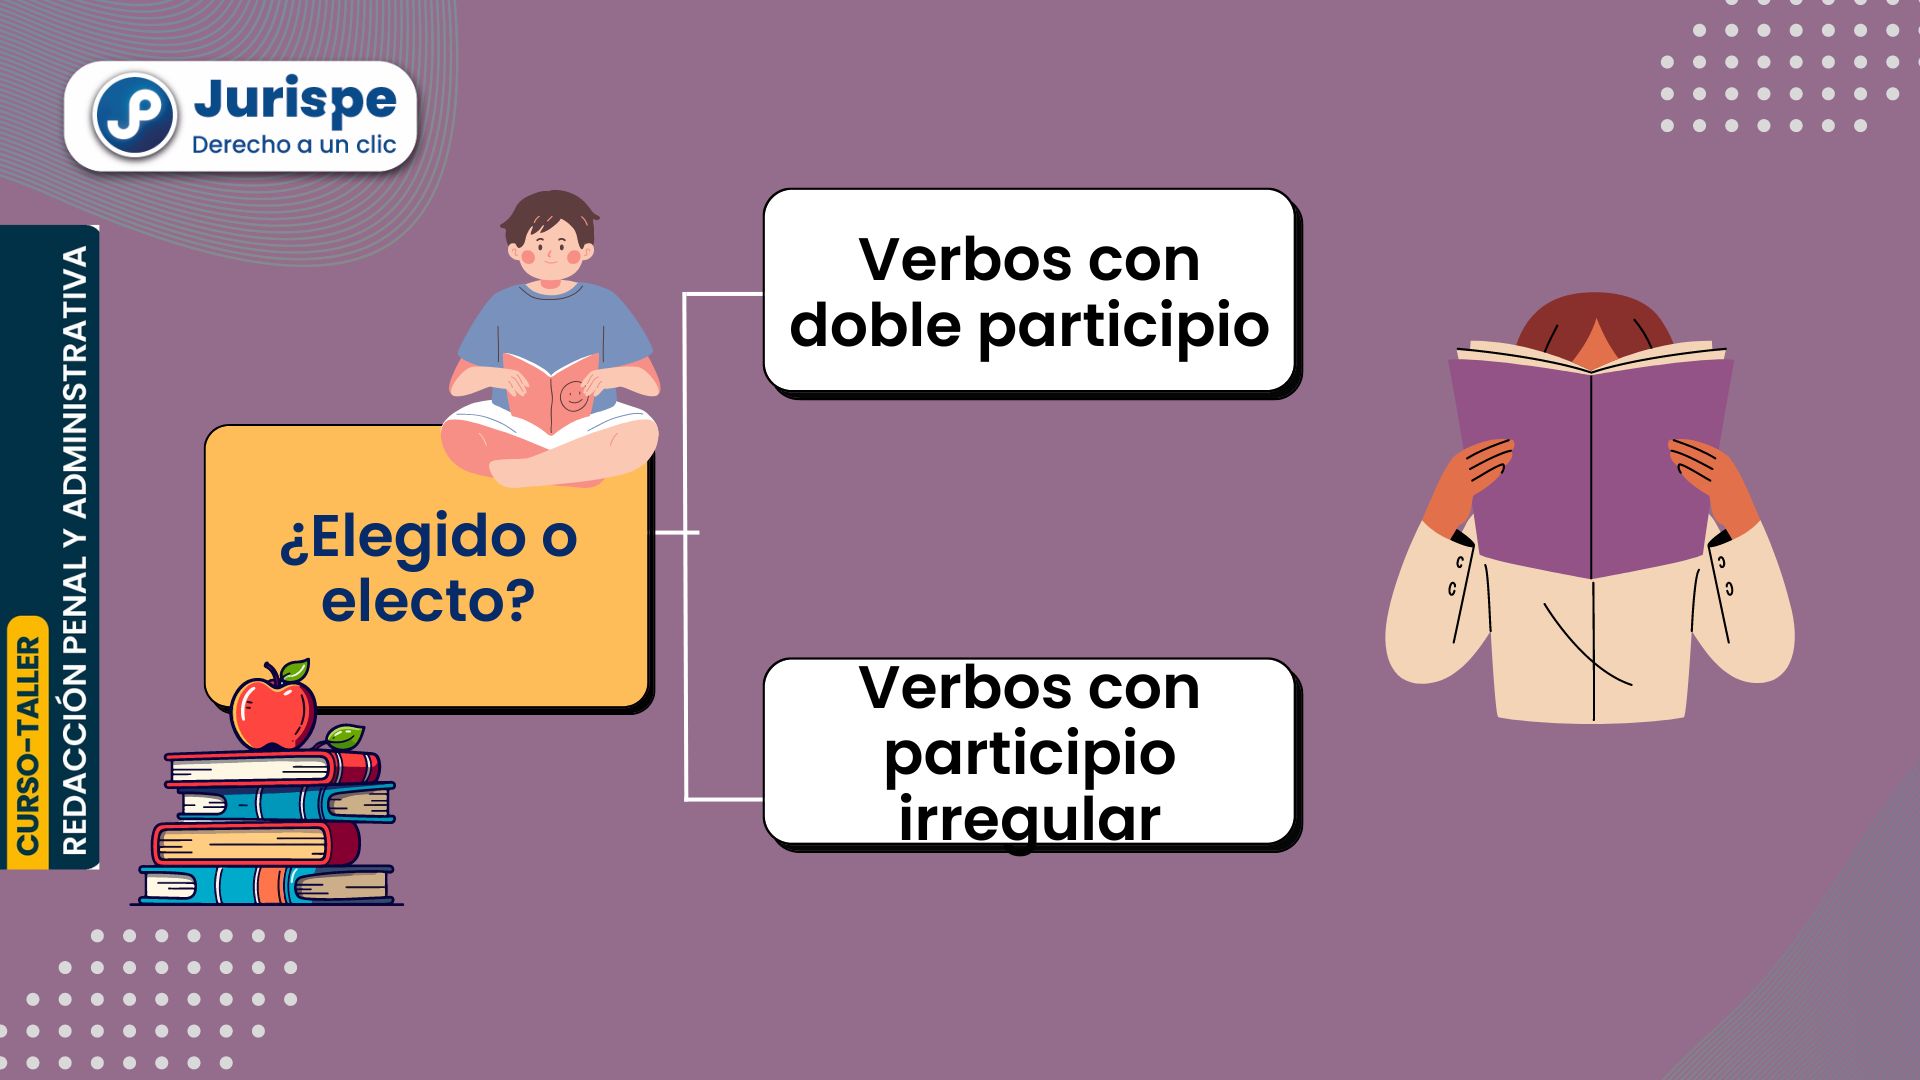 ¿Elegido o electo?: verbos con doble participio y con participios irregulares